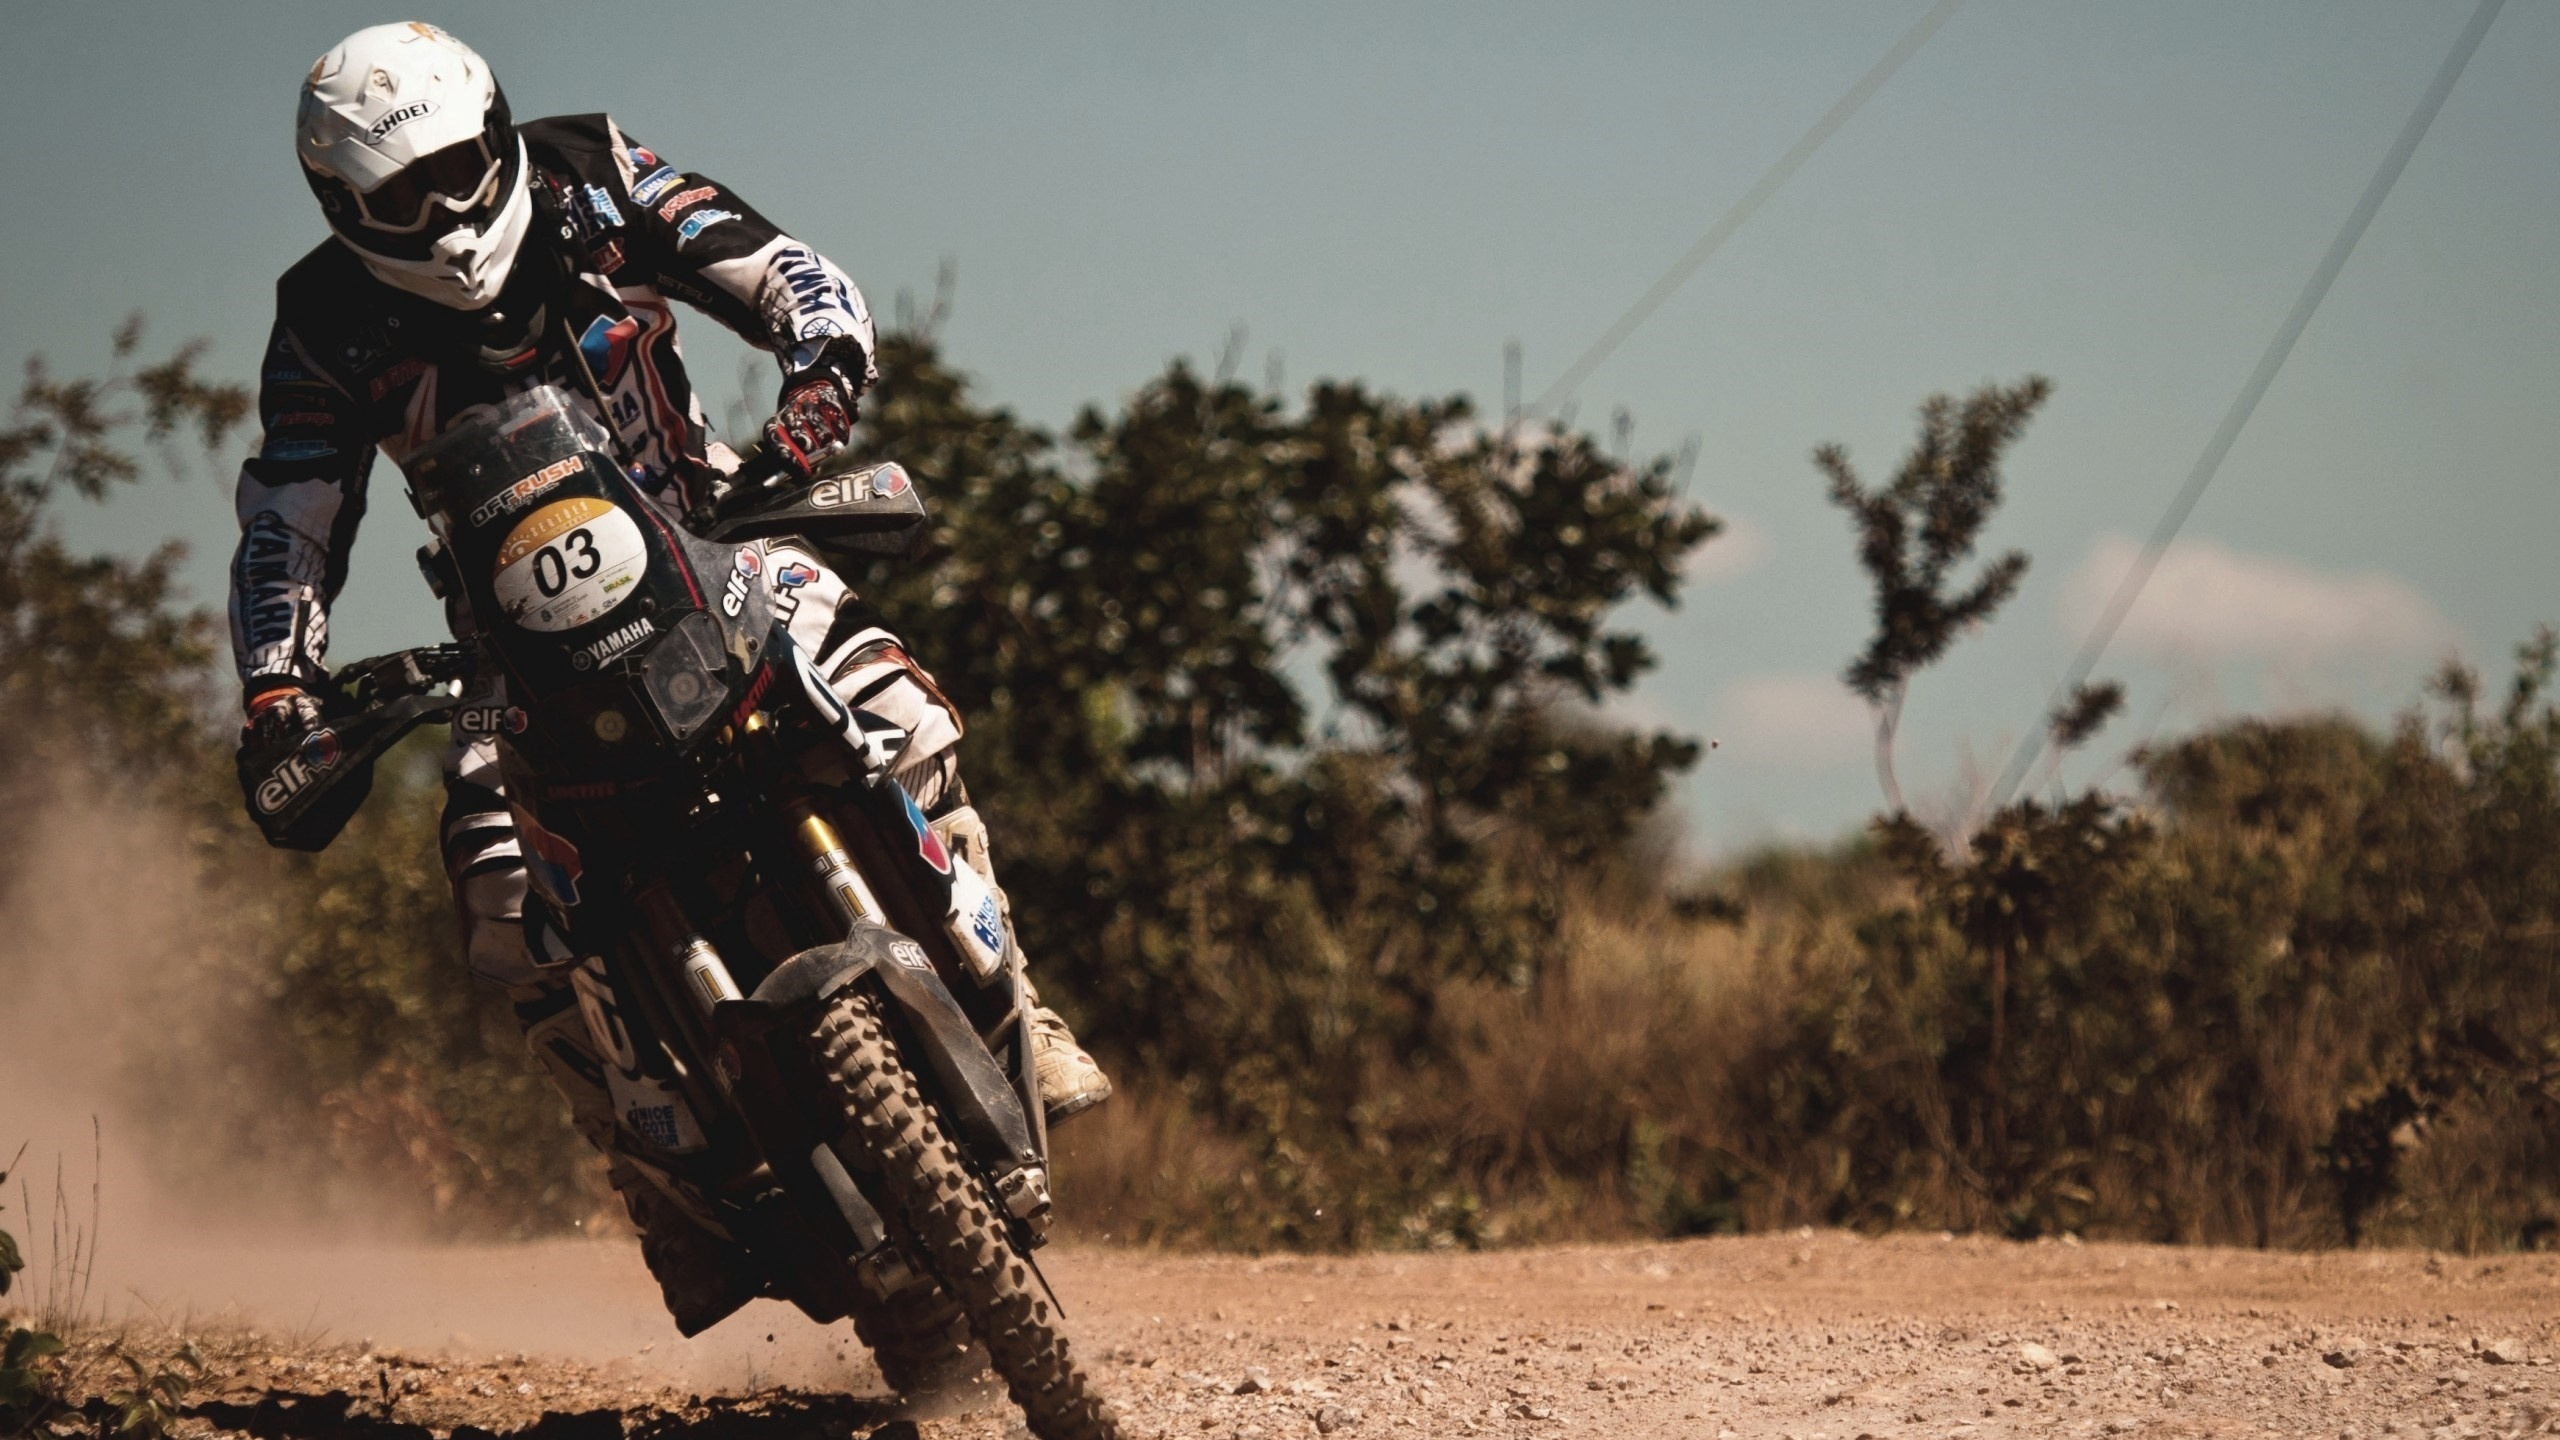 Hombre en Traje de Motocicleta Blanco y Negro Montando Motocross Dirt Bike. Wallpaper in 2560x1440 Resolution